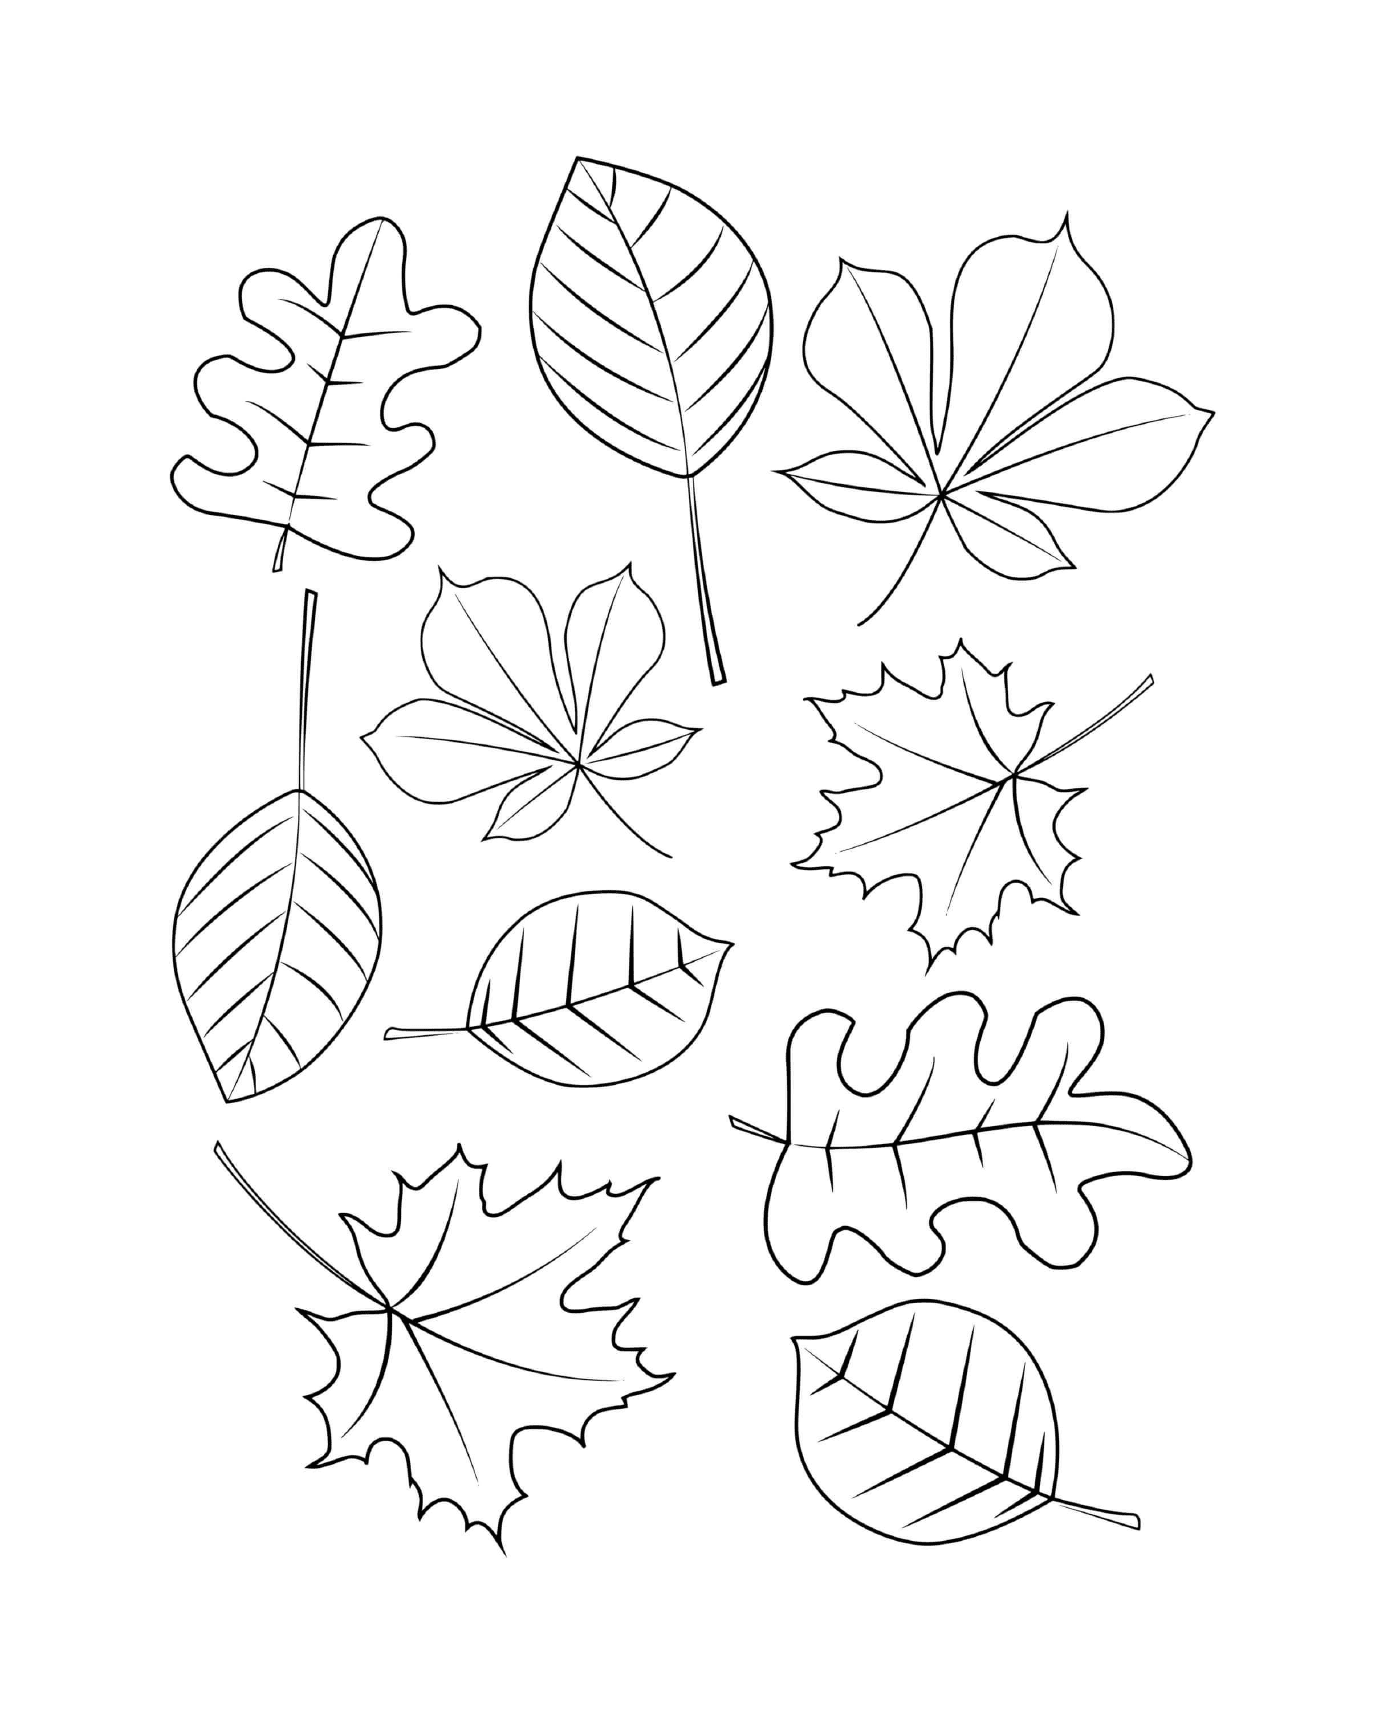  Diferentes tipos de hojas dibujadas en papel 